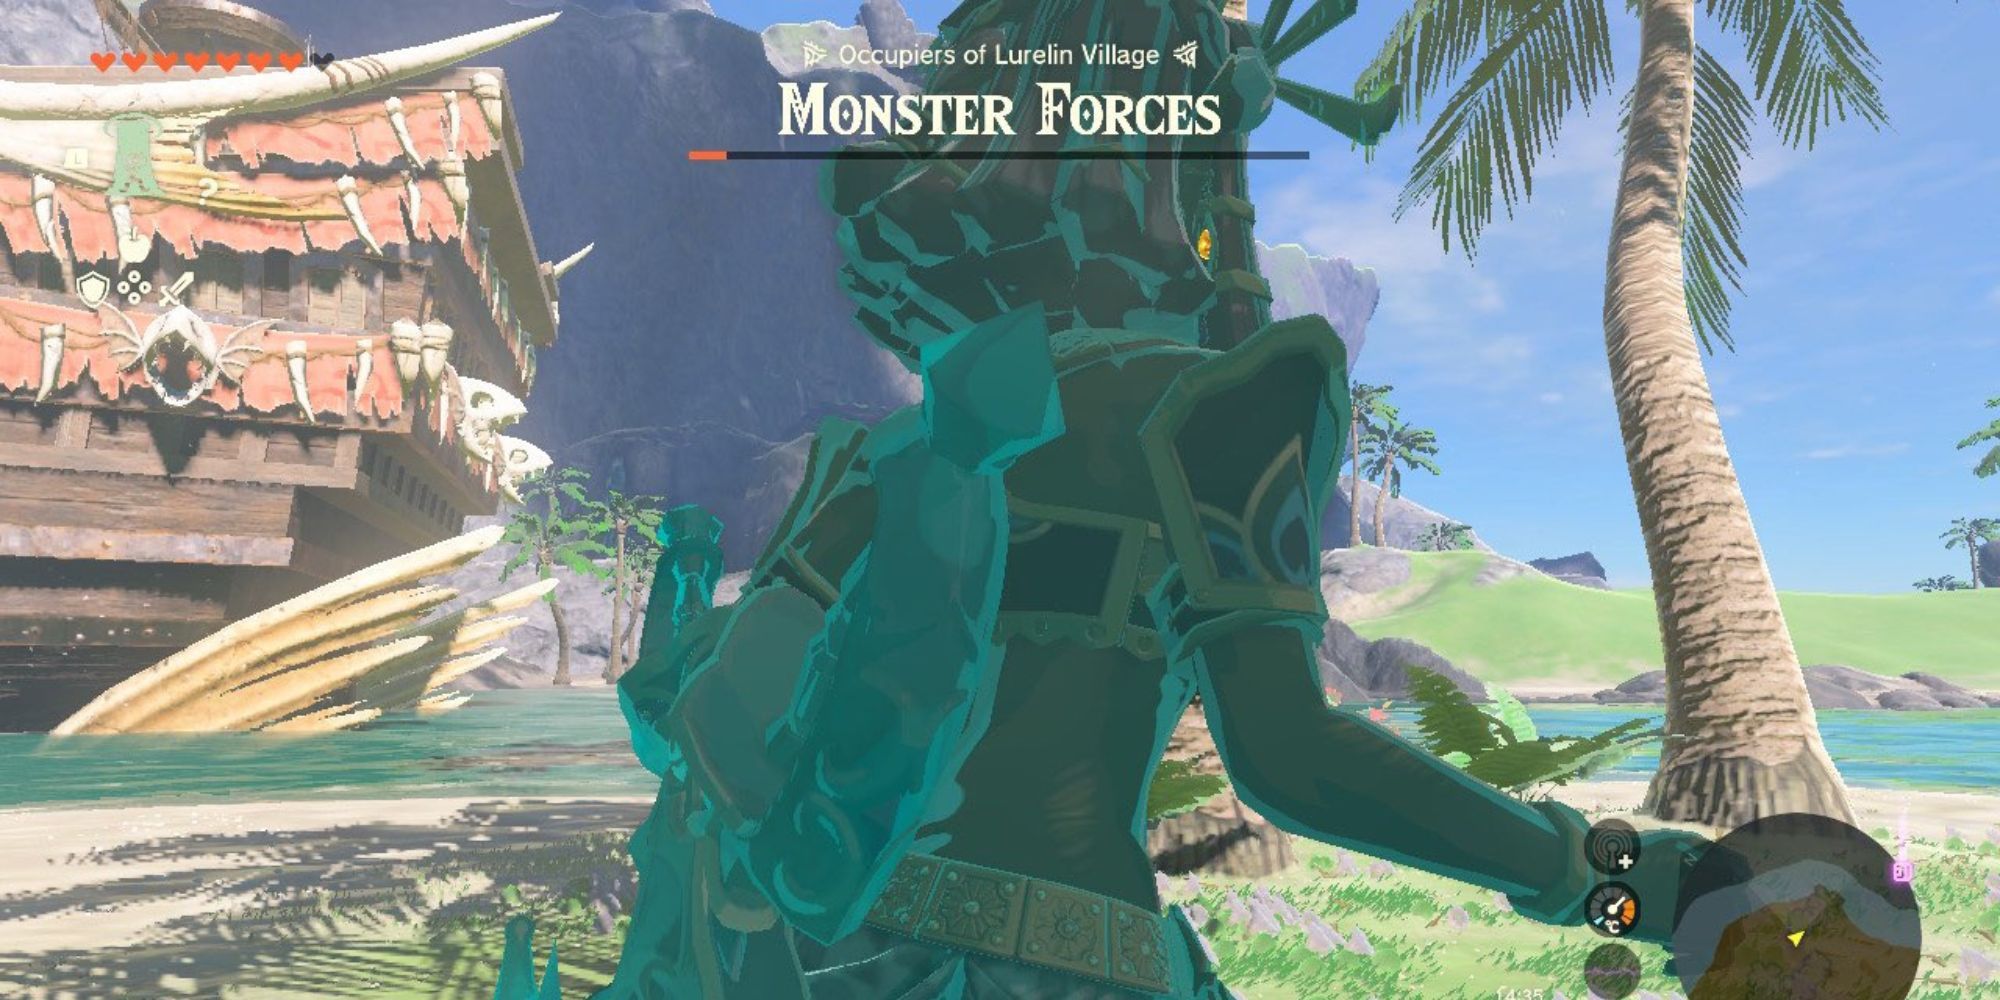 Lurelin Village Monster Forces totk